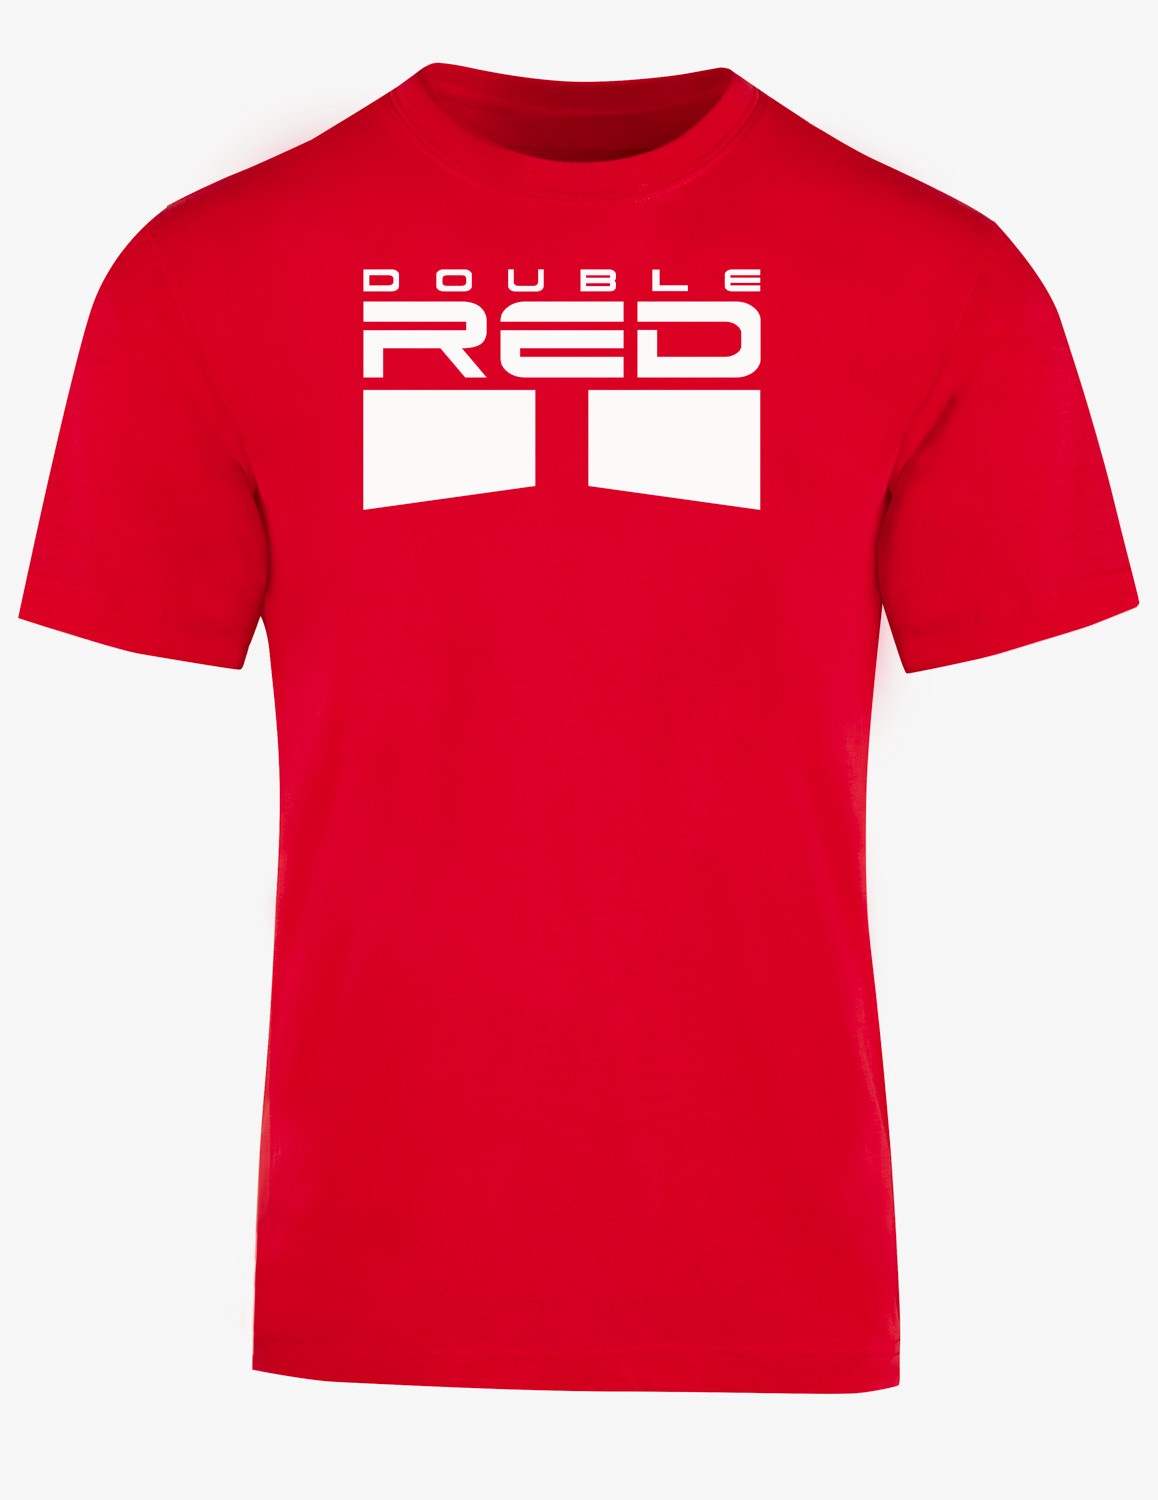 CARBONARO™ T-shirt Red